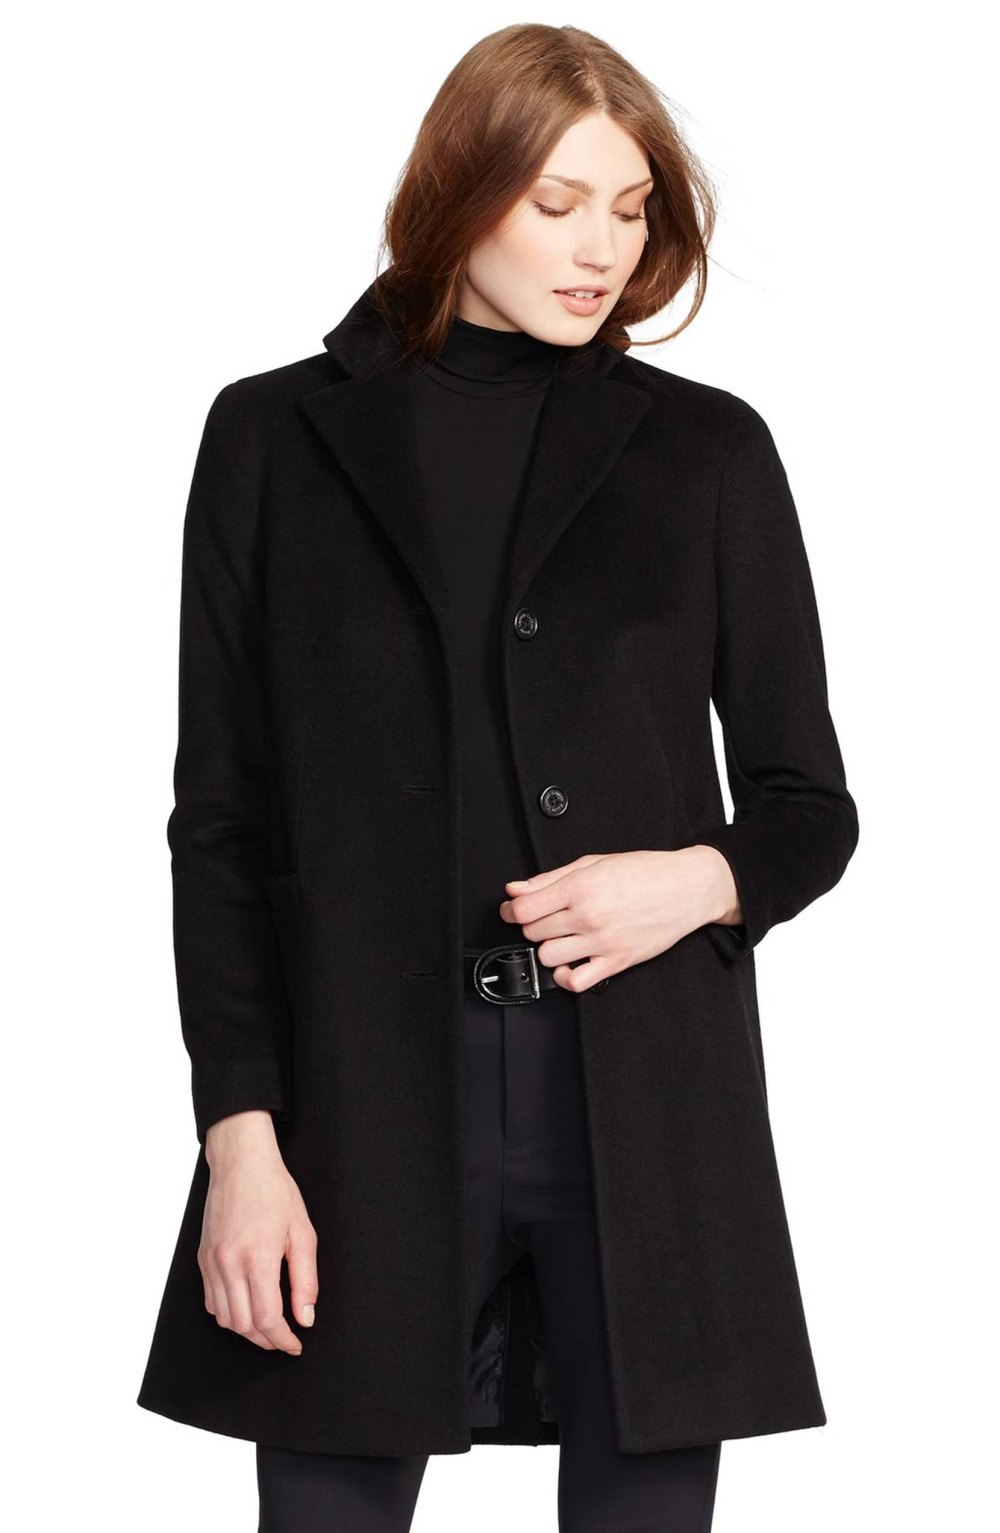 Ralph Lauren reefer coat wool blend nordstrom black color